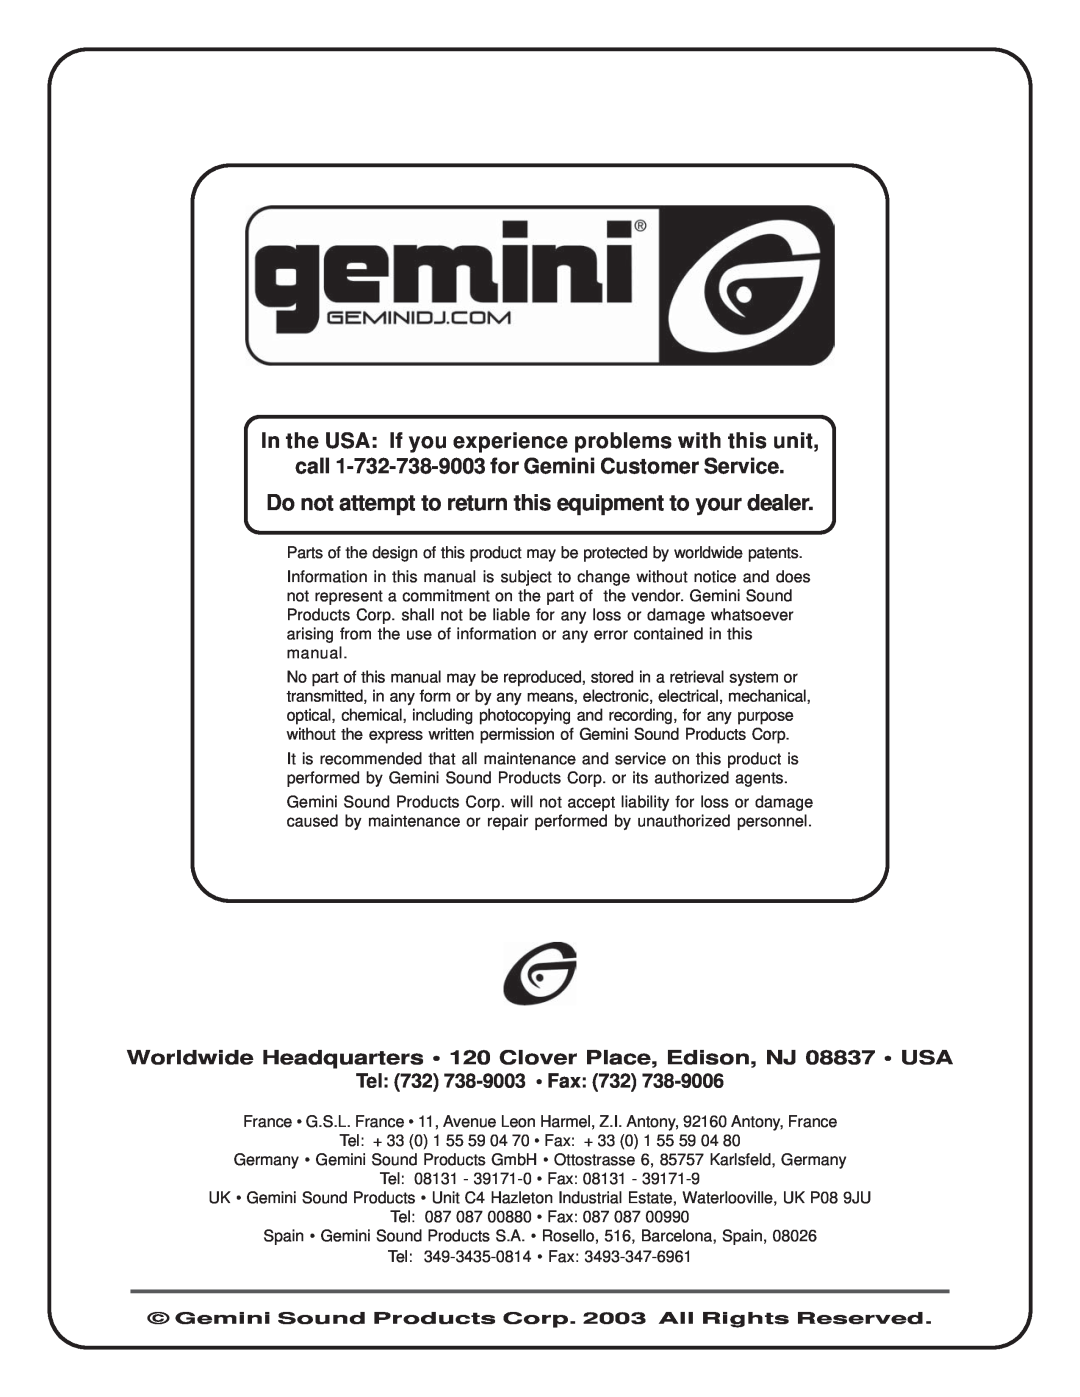 Gemini P-700 manual call 1-732-738-9003for Gemini Customer Service, Tel 732 738-9003 Fax 